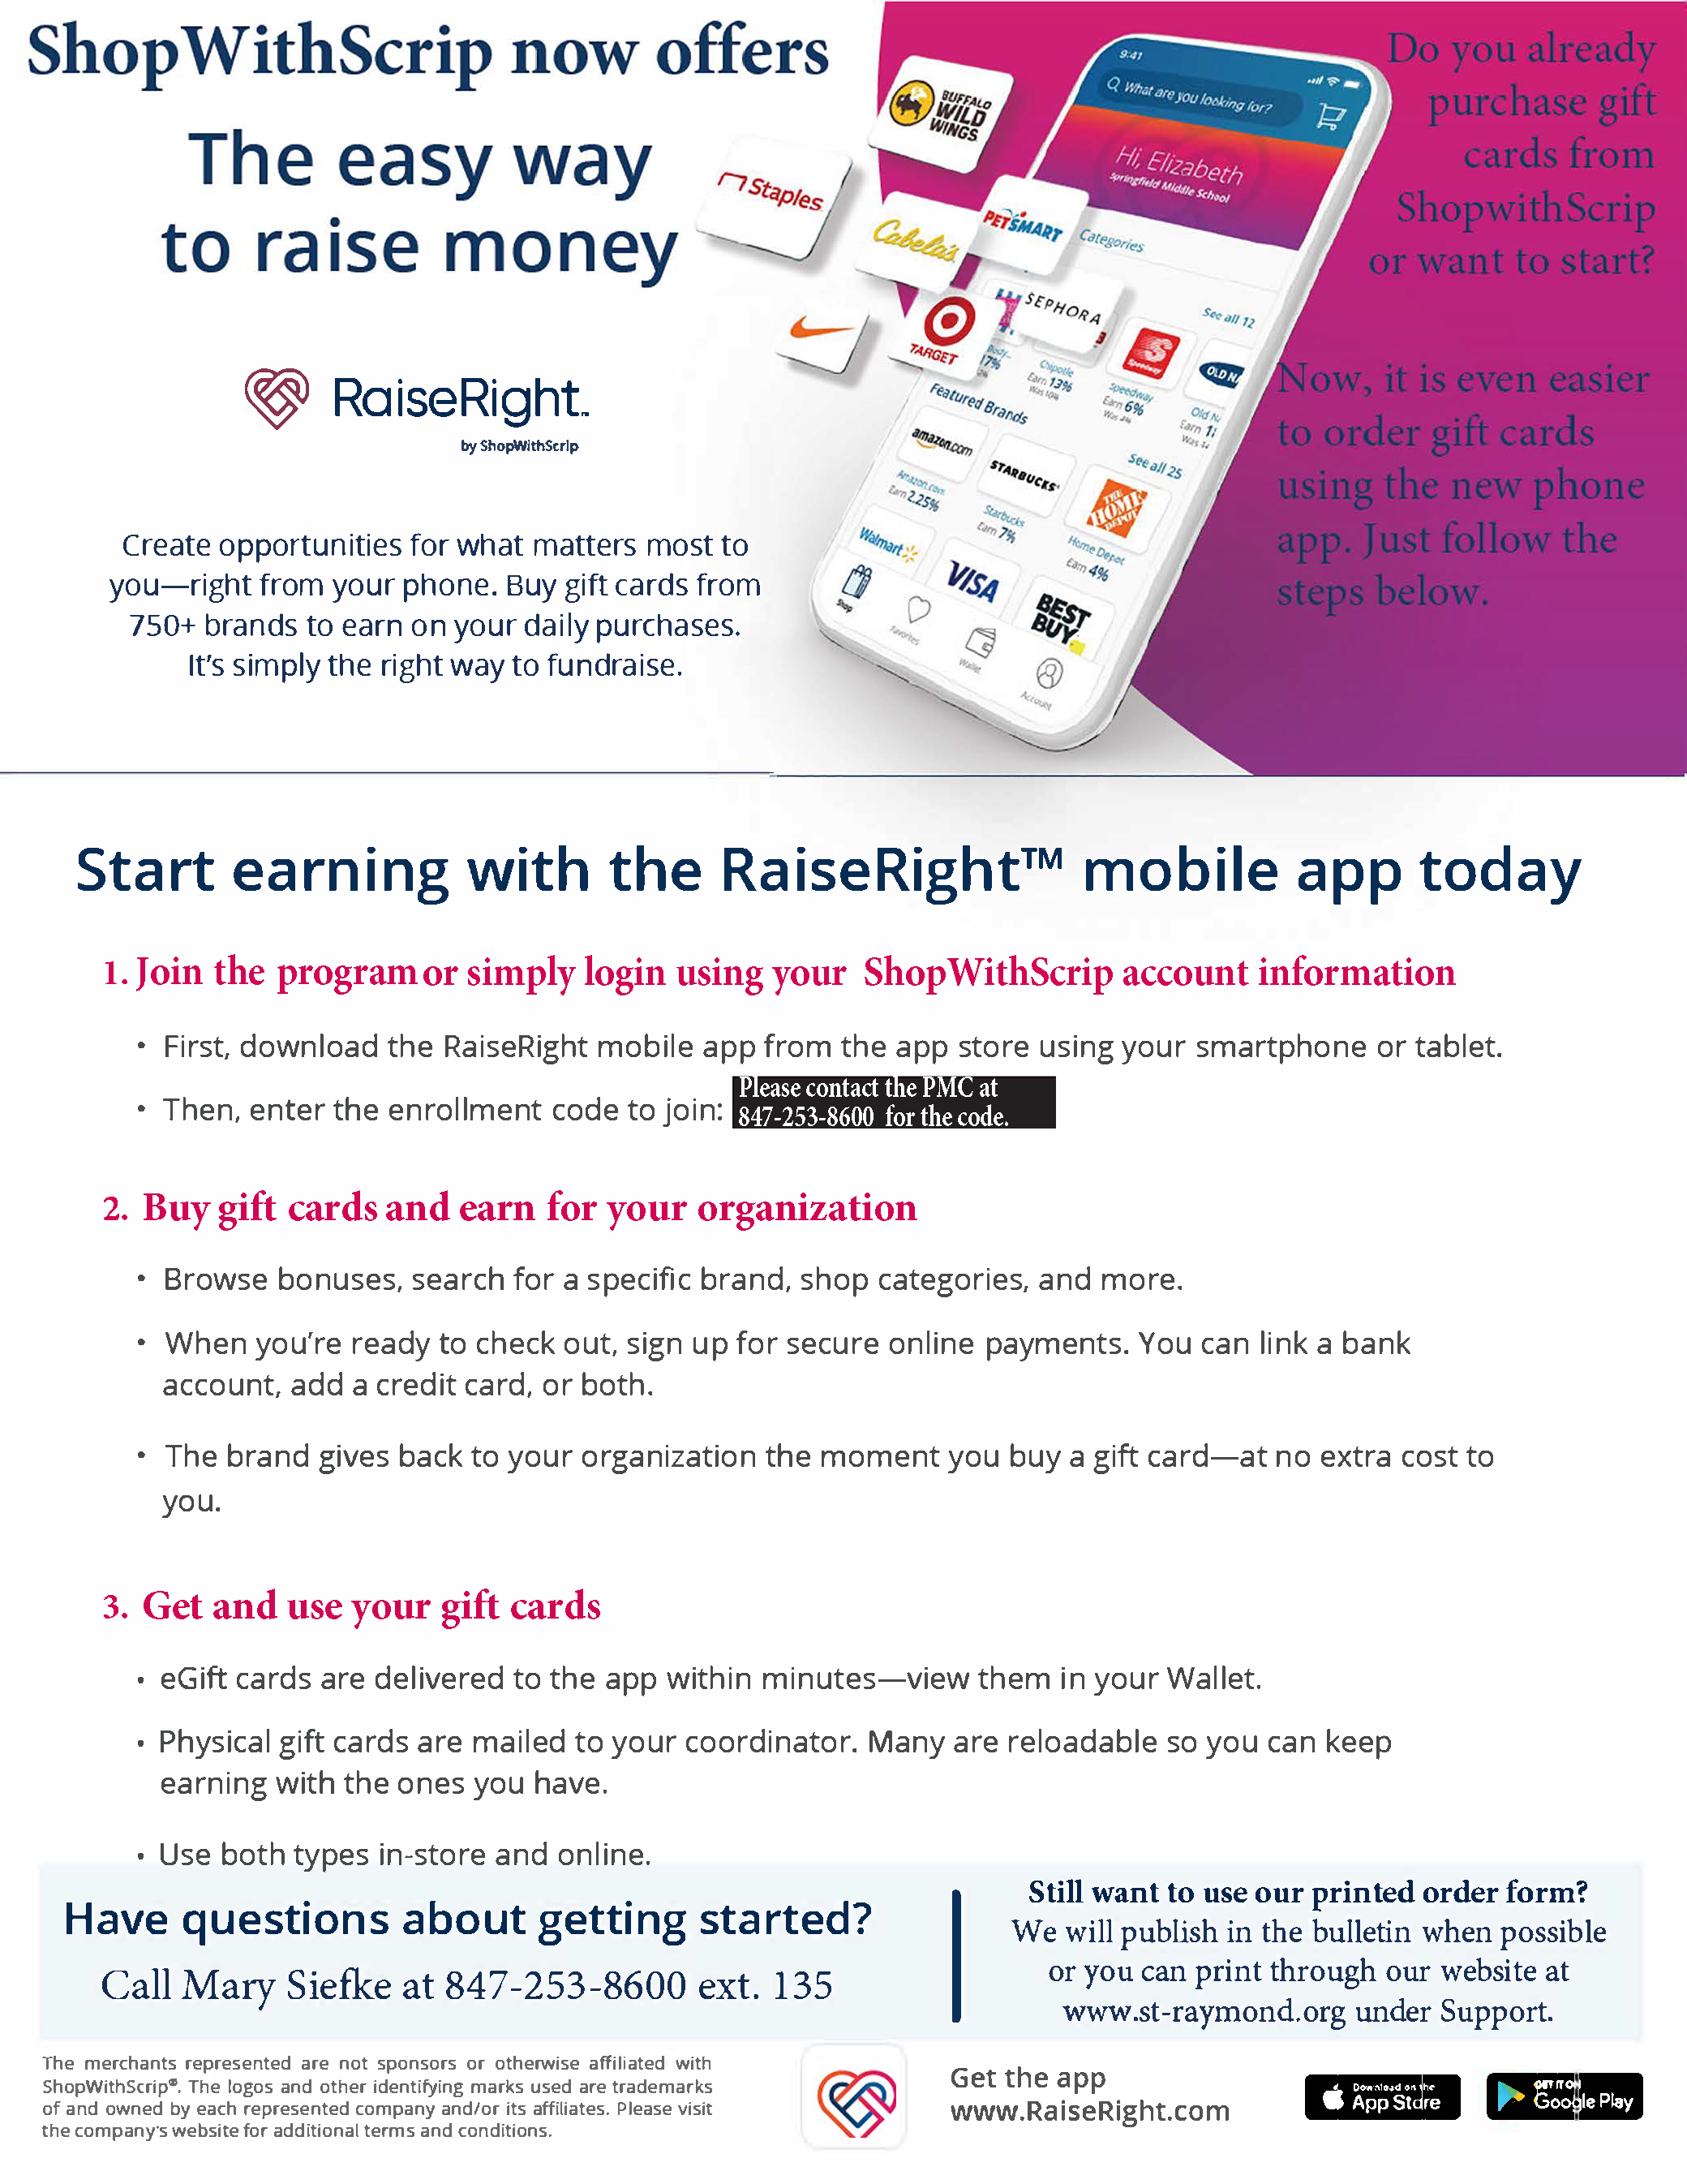 RaiseRight App